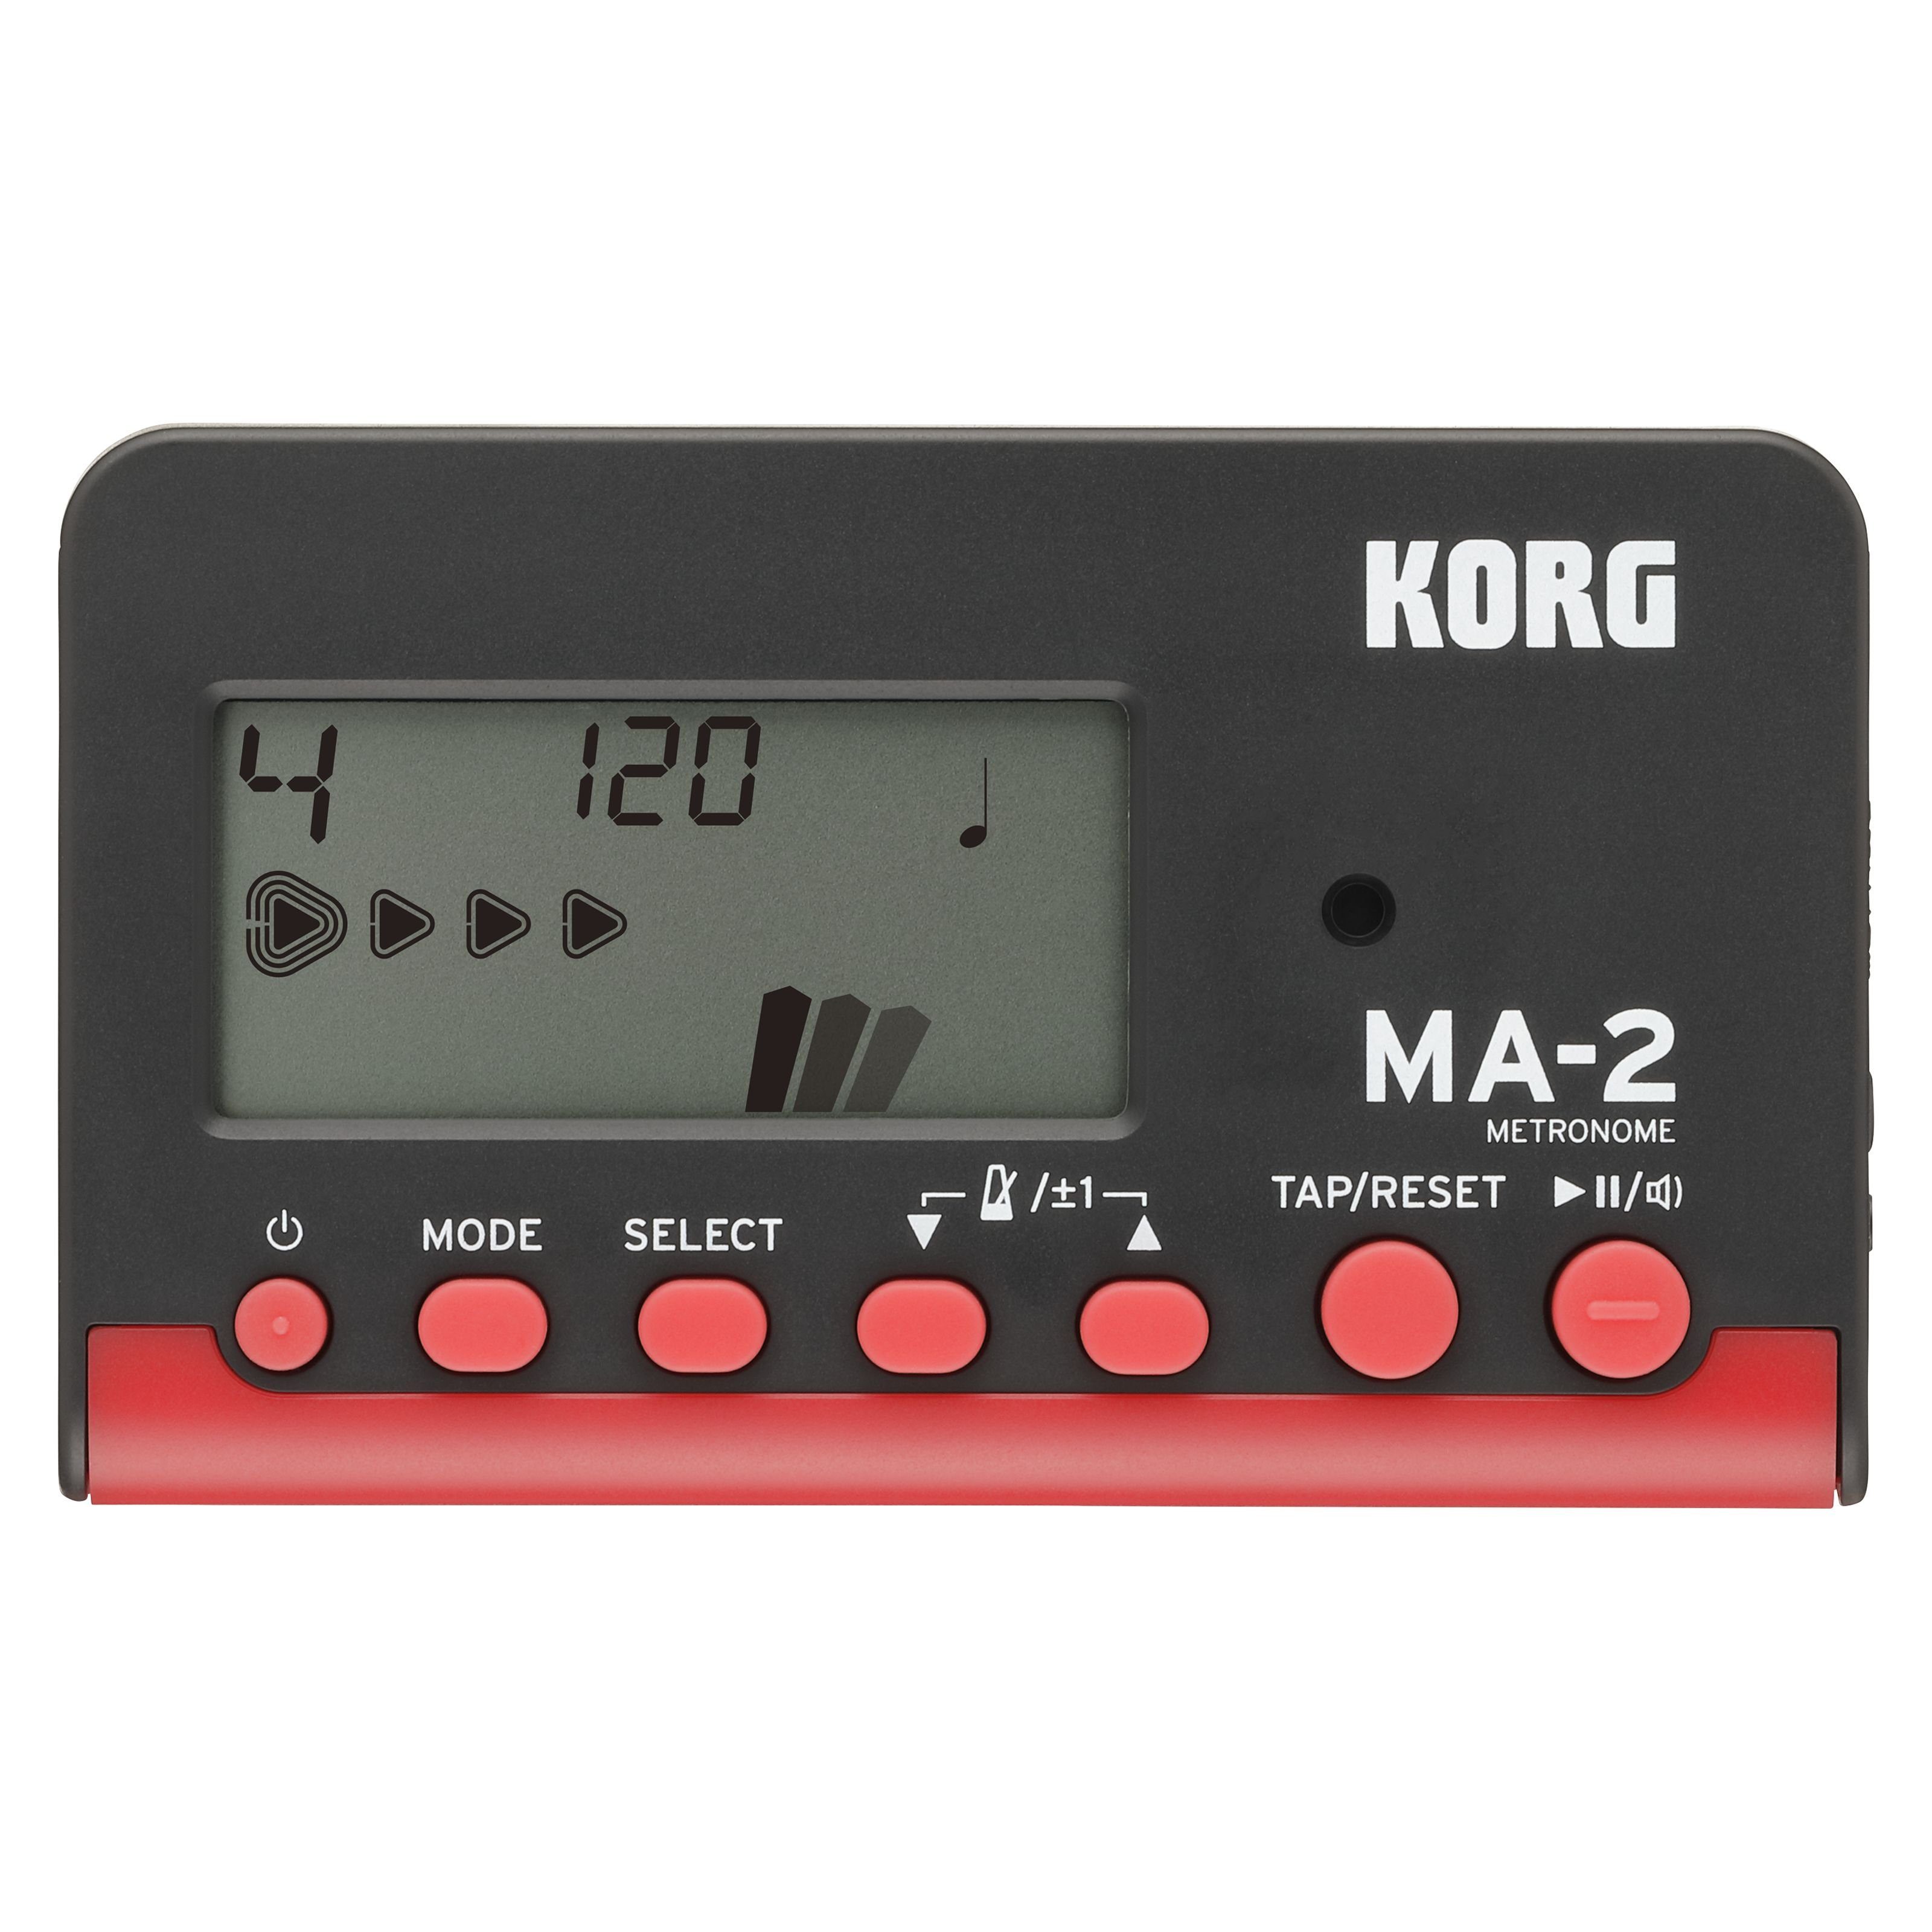 Korg Metronom, (MA-2 BK Metronome, Metronome, Metronome), MA-2 BK Metronome - Metronom